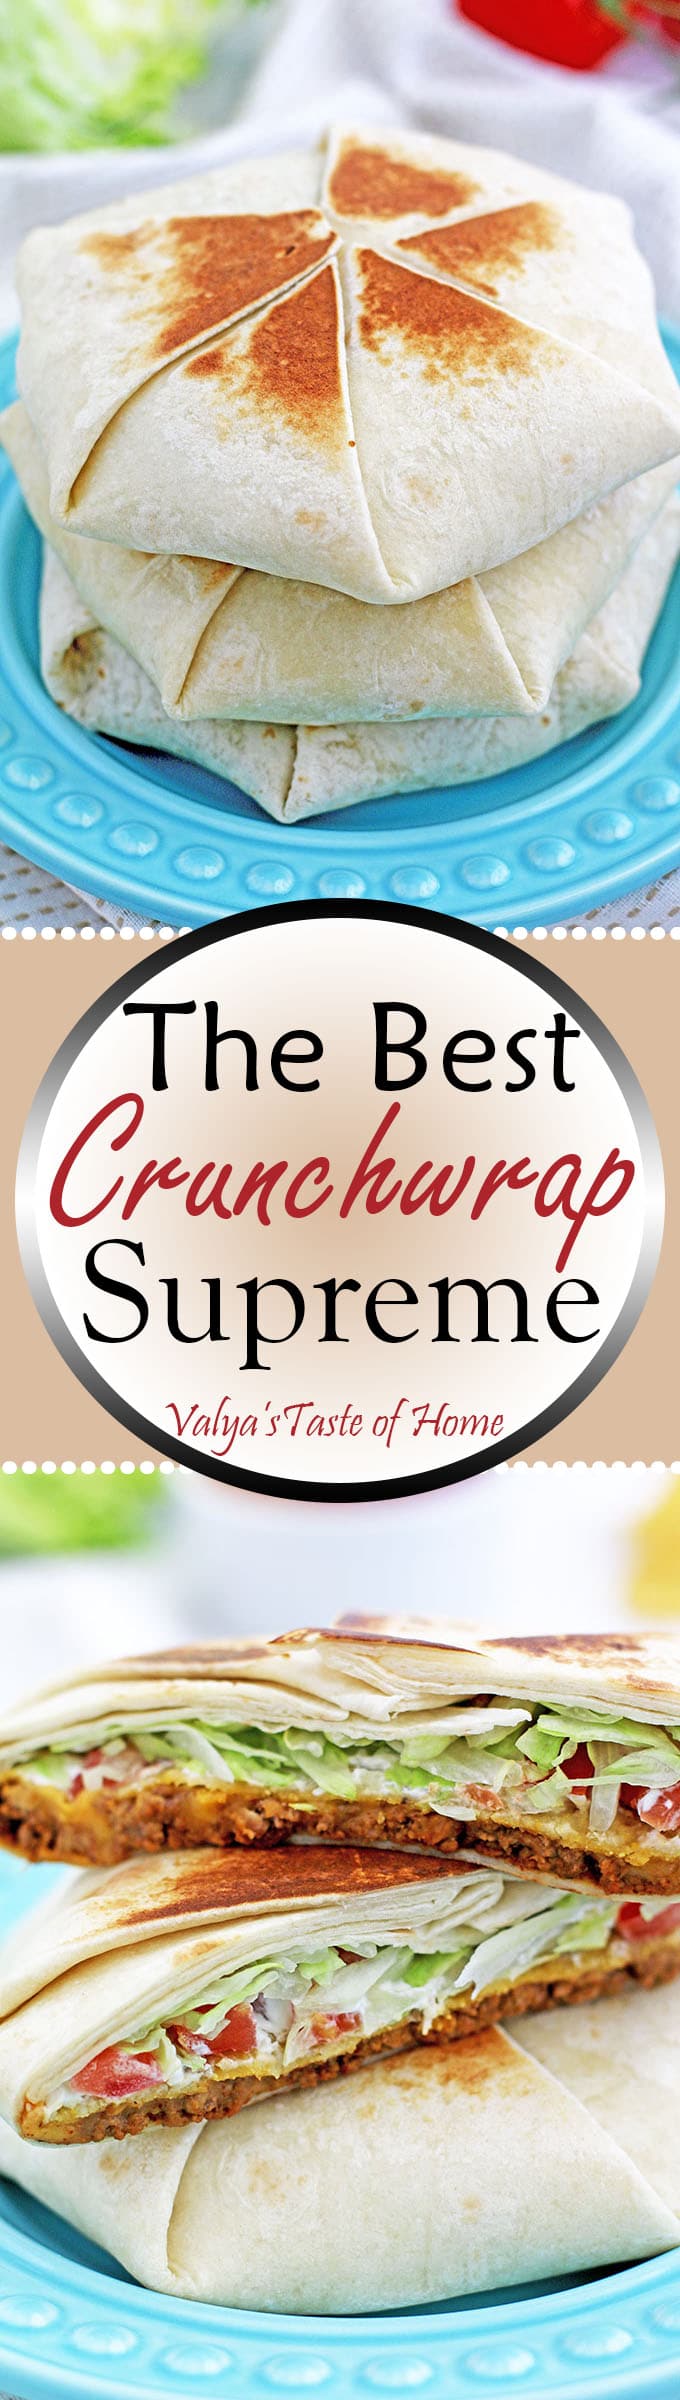 The Best Crunchwrap Supreme Recipe